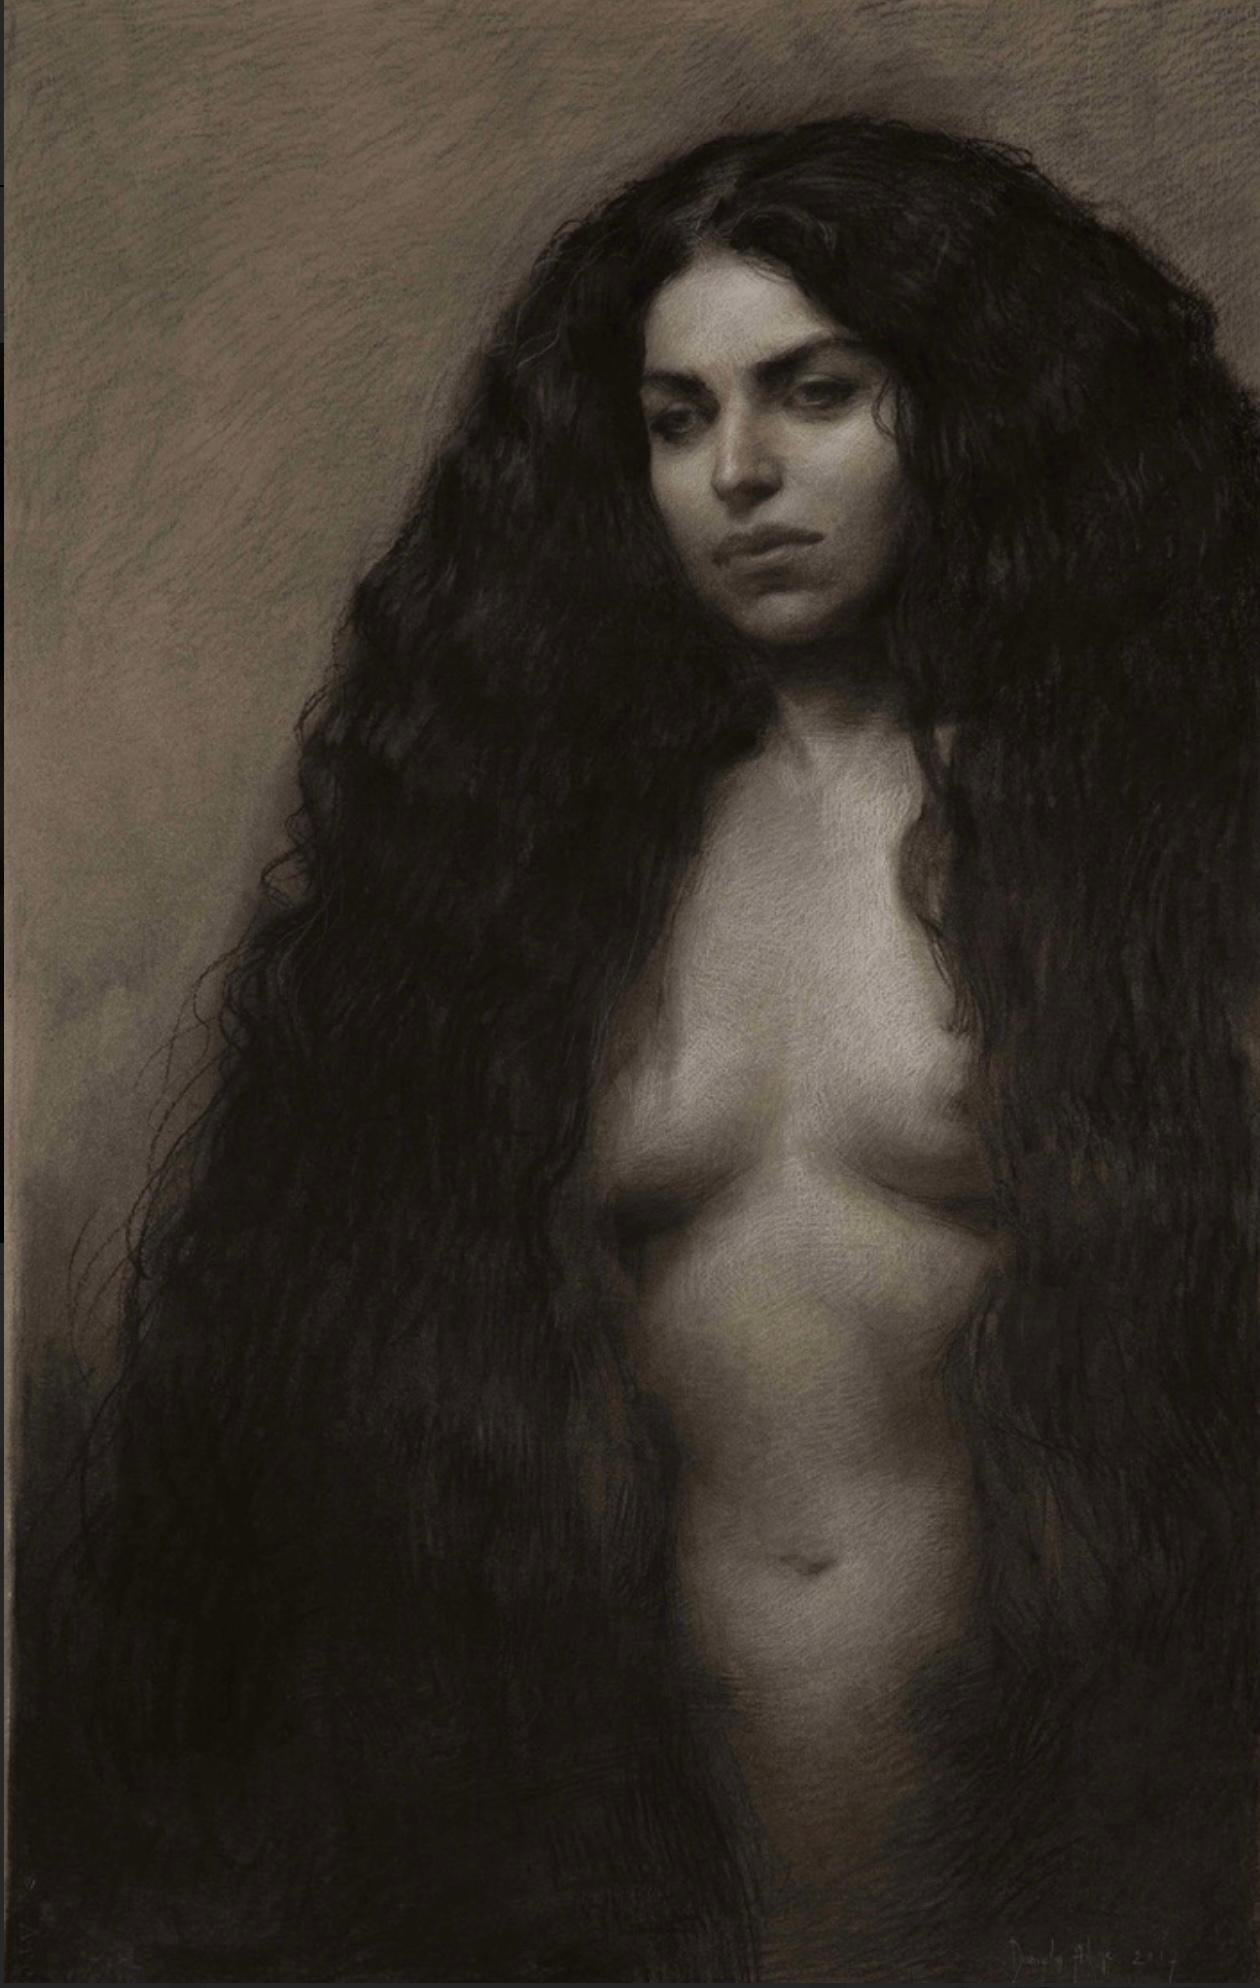 Nude Daniela Astone - Scilla, dessin italien au fusain du 21e siècle représentant une femme nue avec de longs cheveux